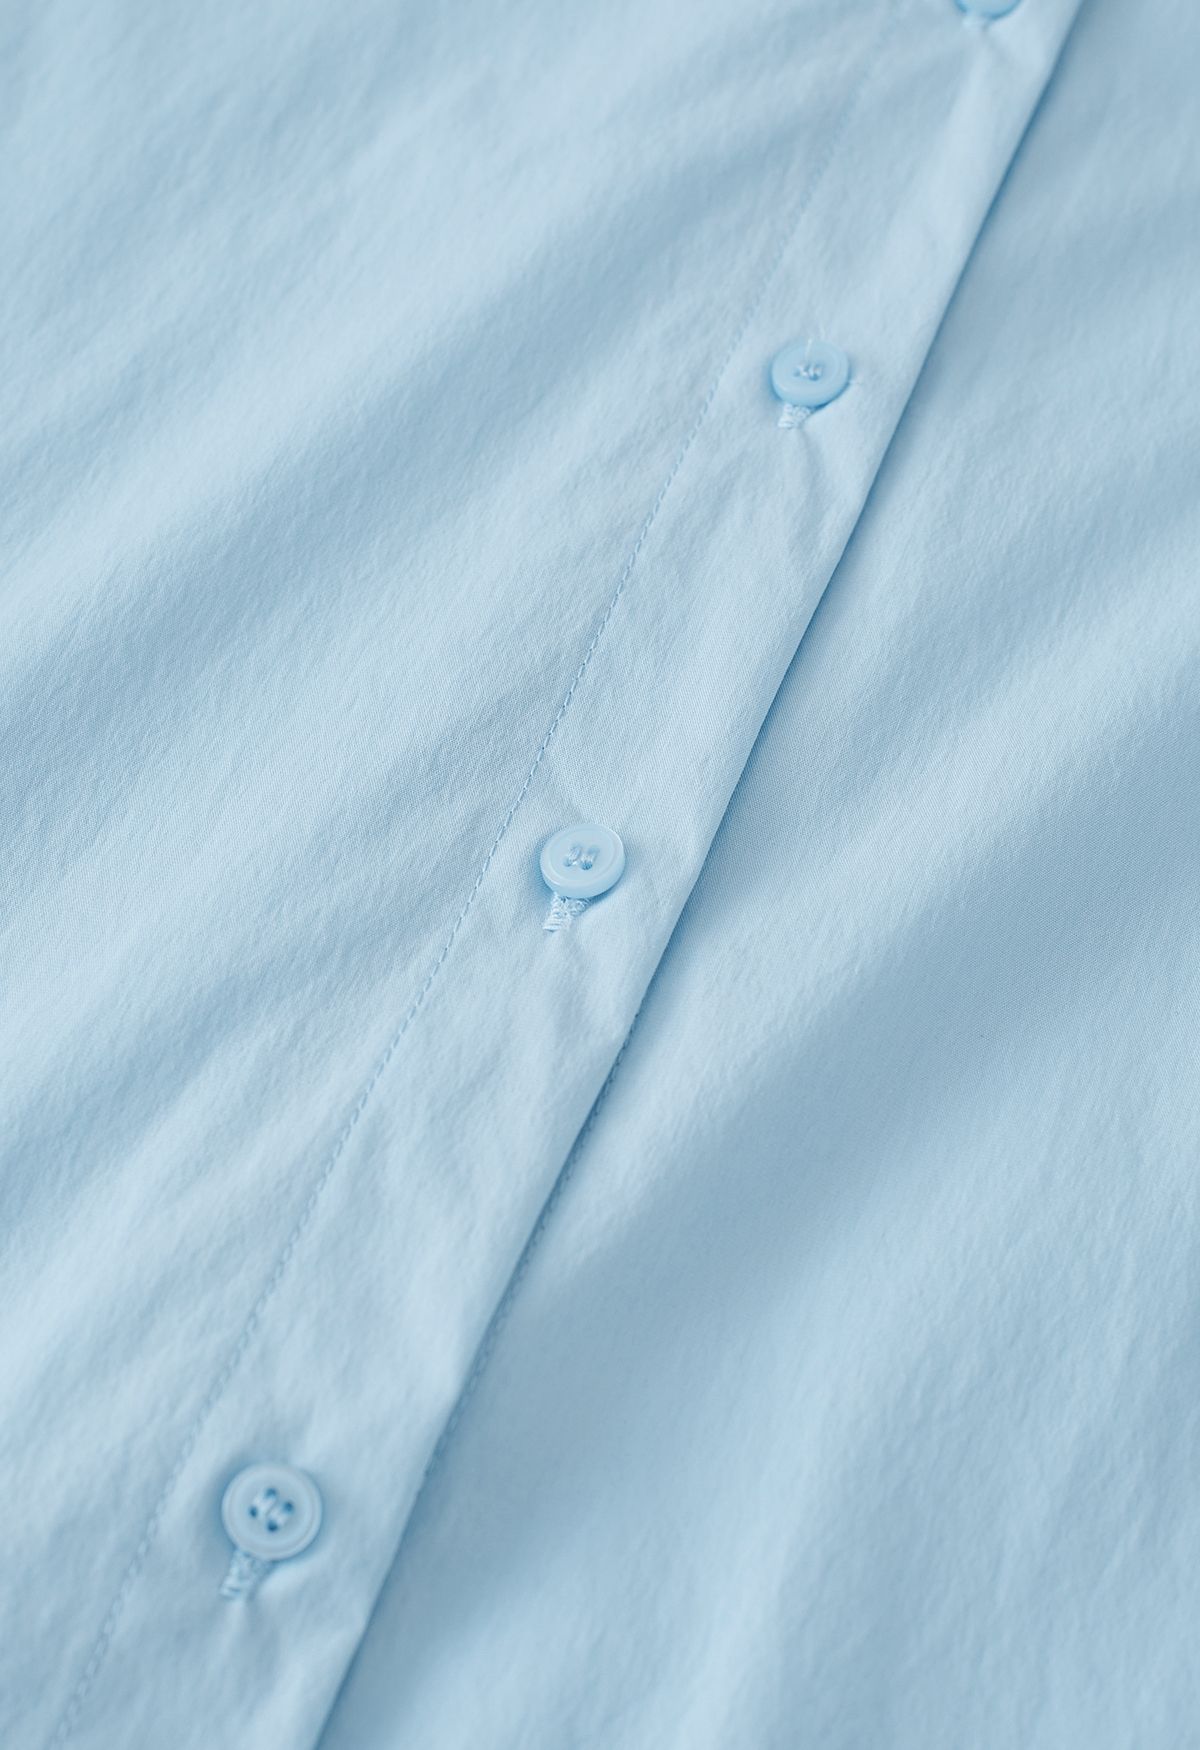 Camisa de algodón con parche plisado en azul